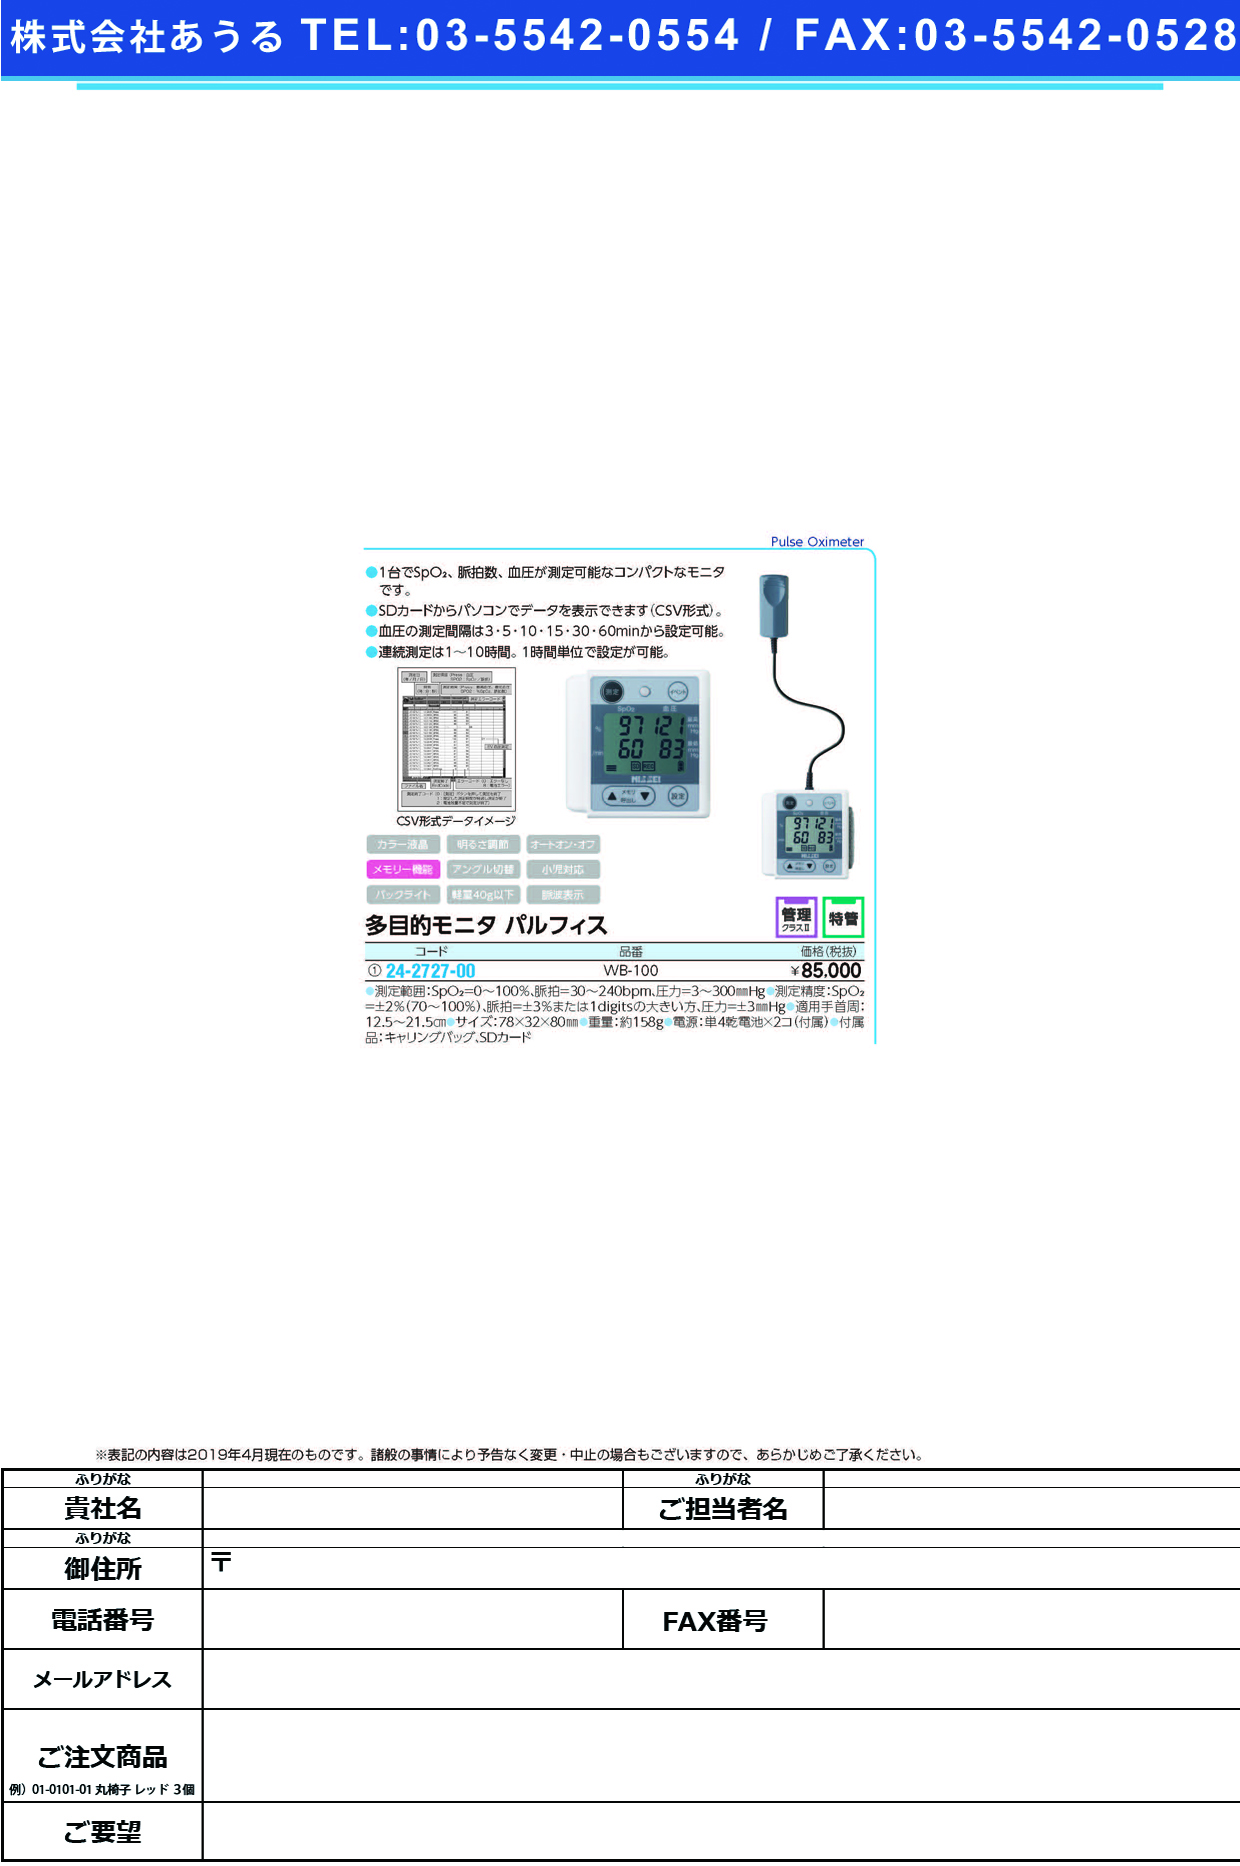 (24-2727-00)多目的モニタパルフィス WB-100 ﾀﾓｸﾃｷﾓﾆﾀﾊﾟﾙﾌｨｽ(日本精密測器)【1台単位】【2019年カタログ商品】